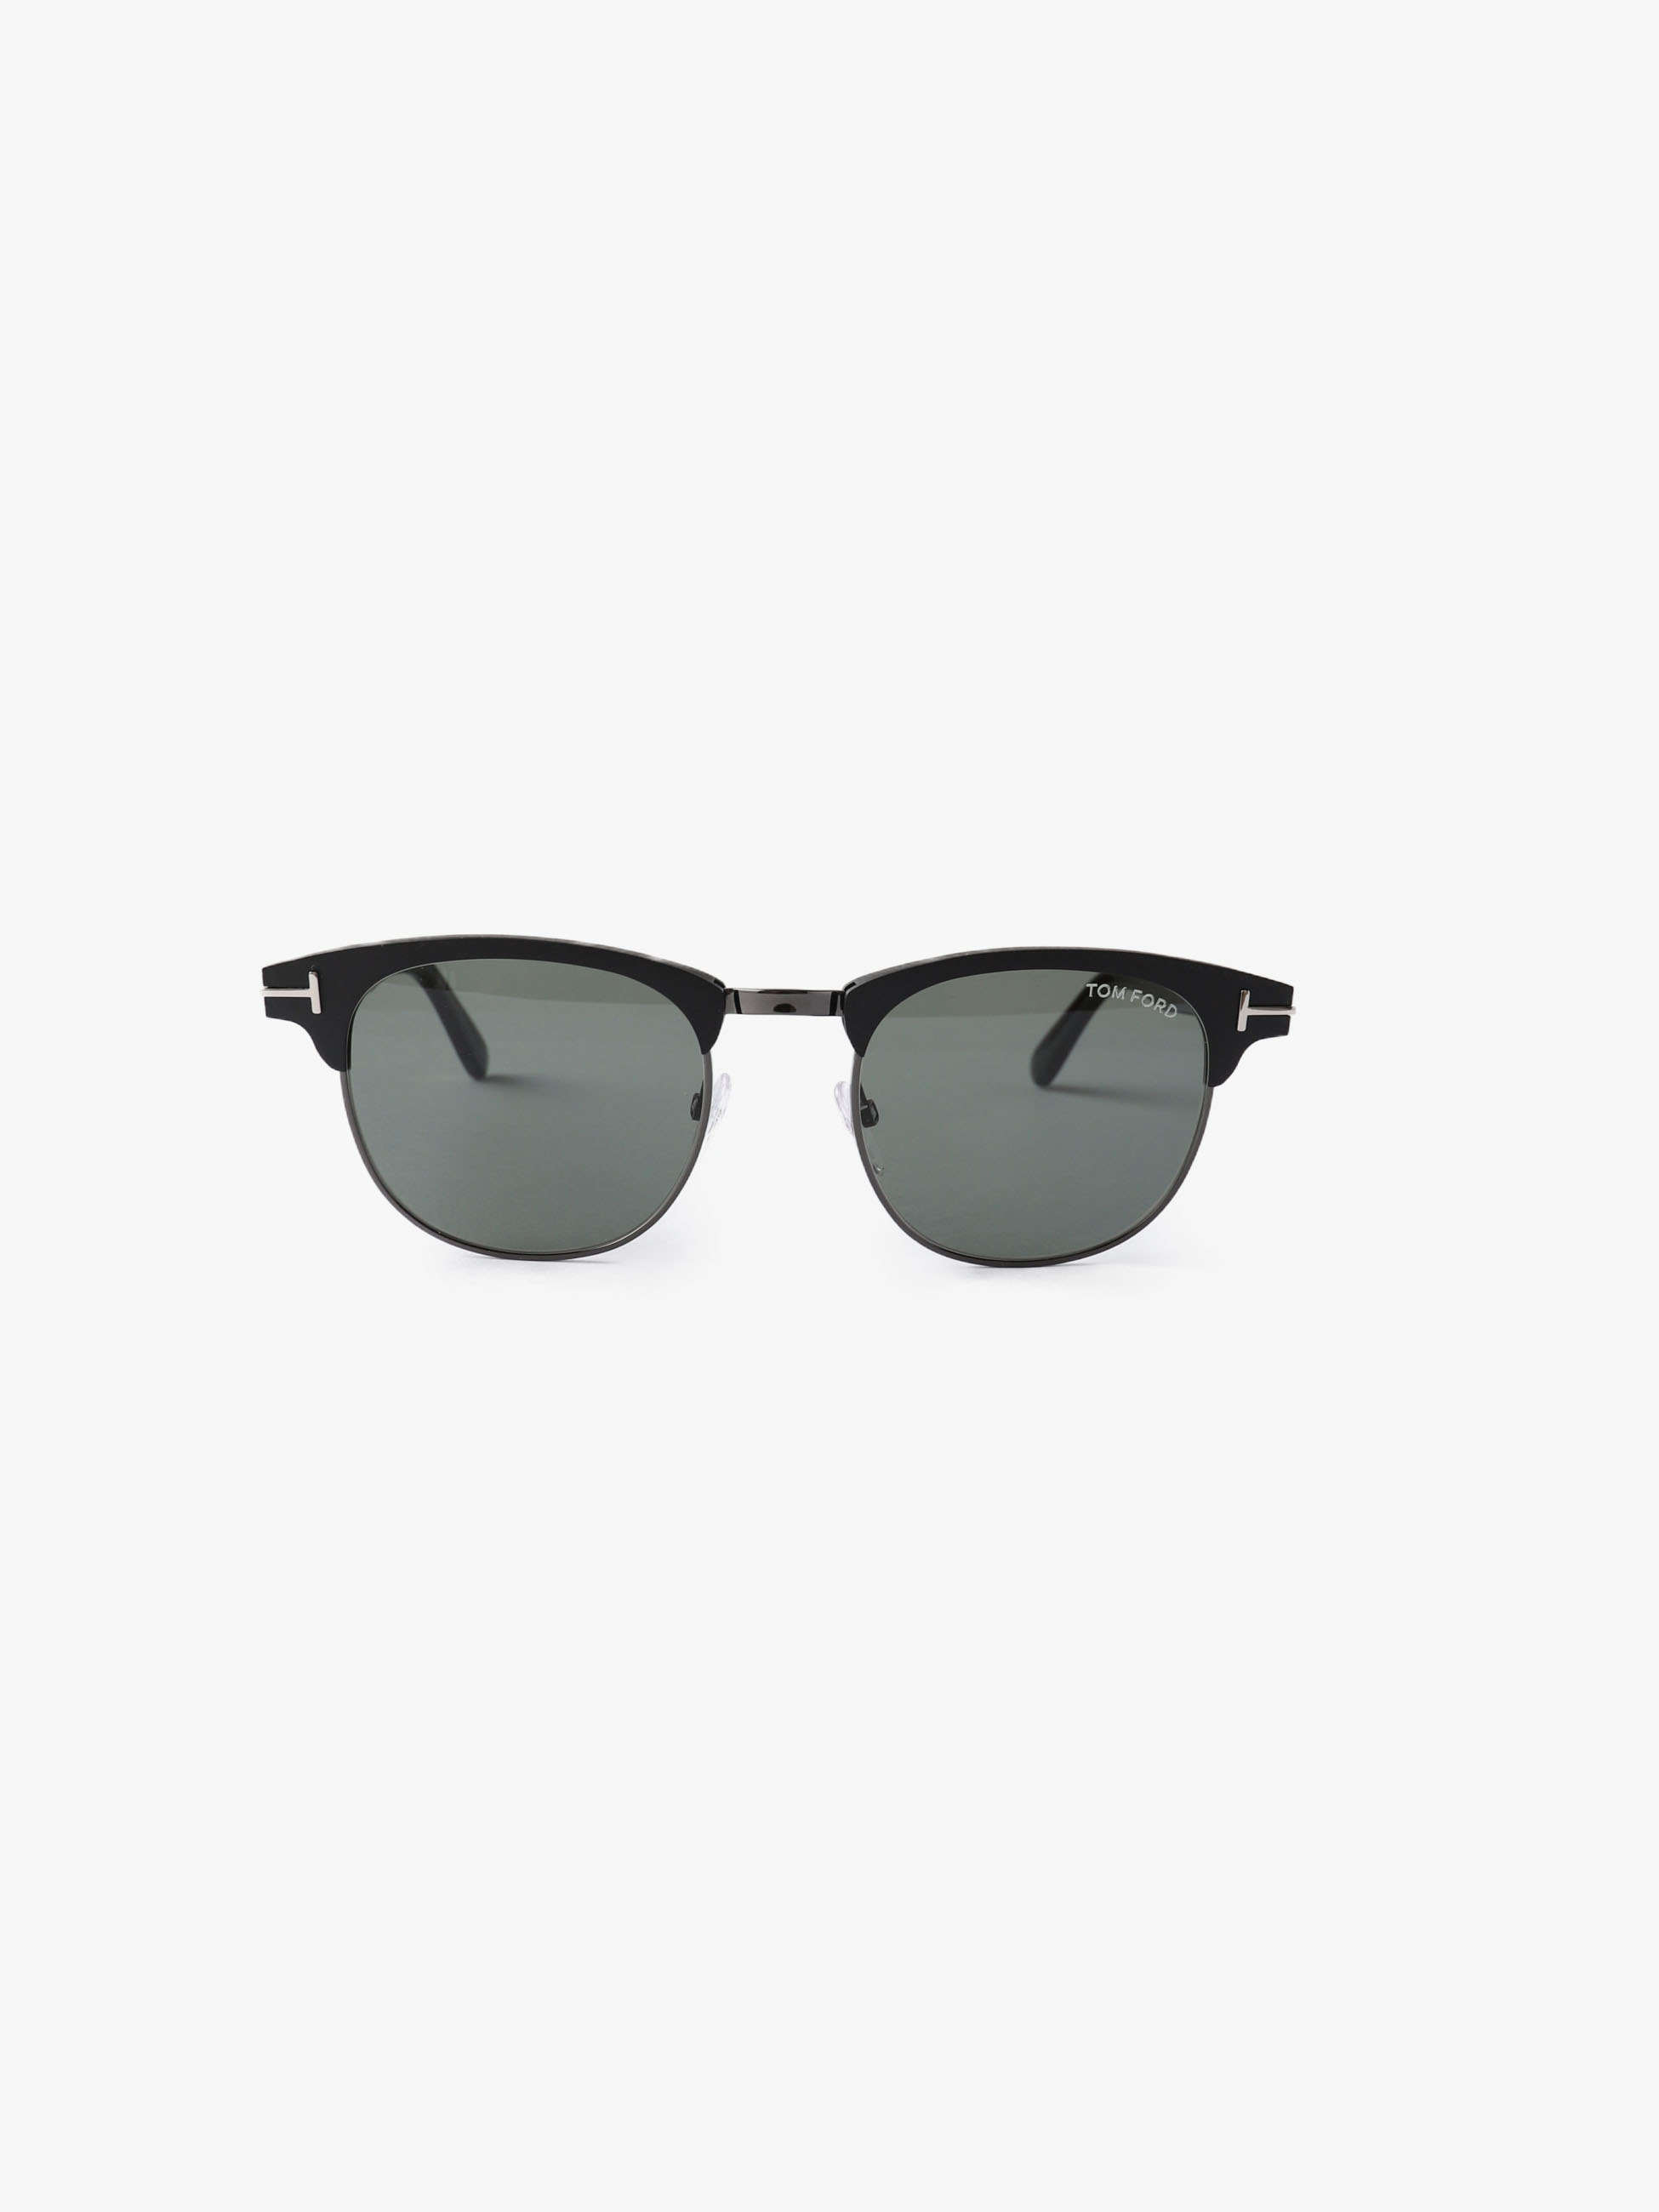 Sunglasses (FT0623)｜TOM FORD(トム フォード)｜Ron Herman